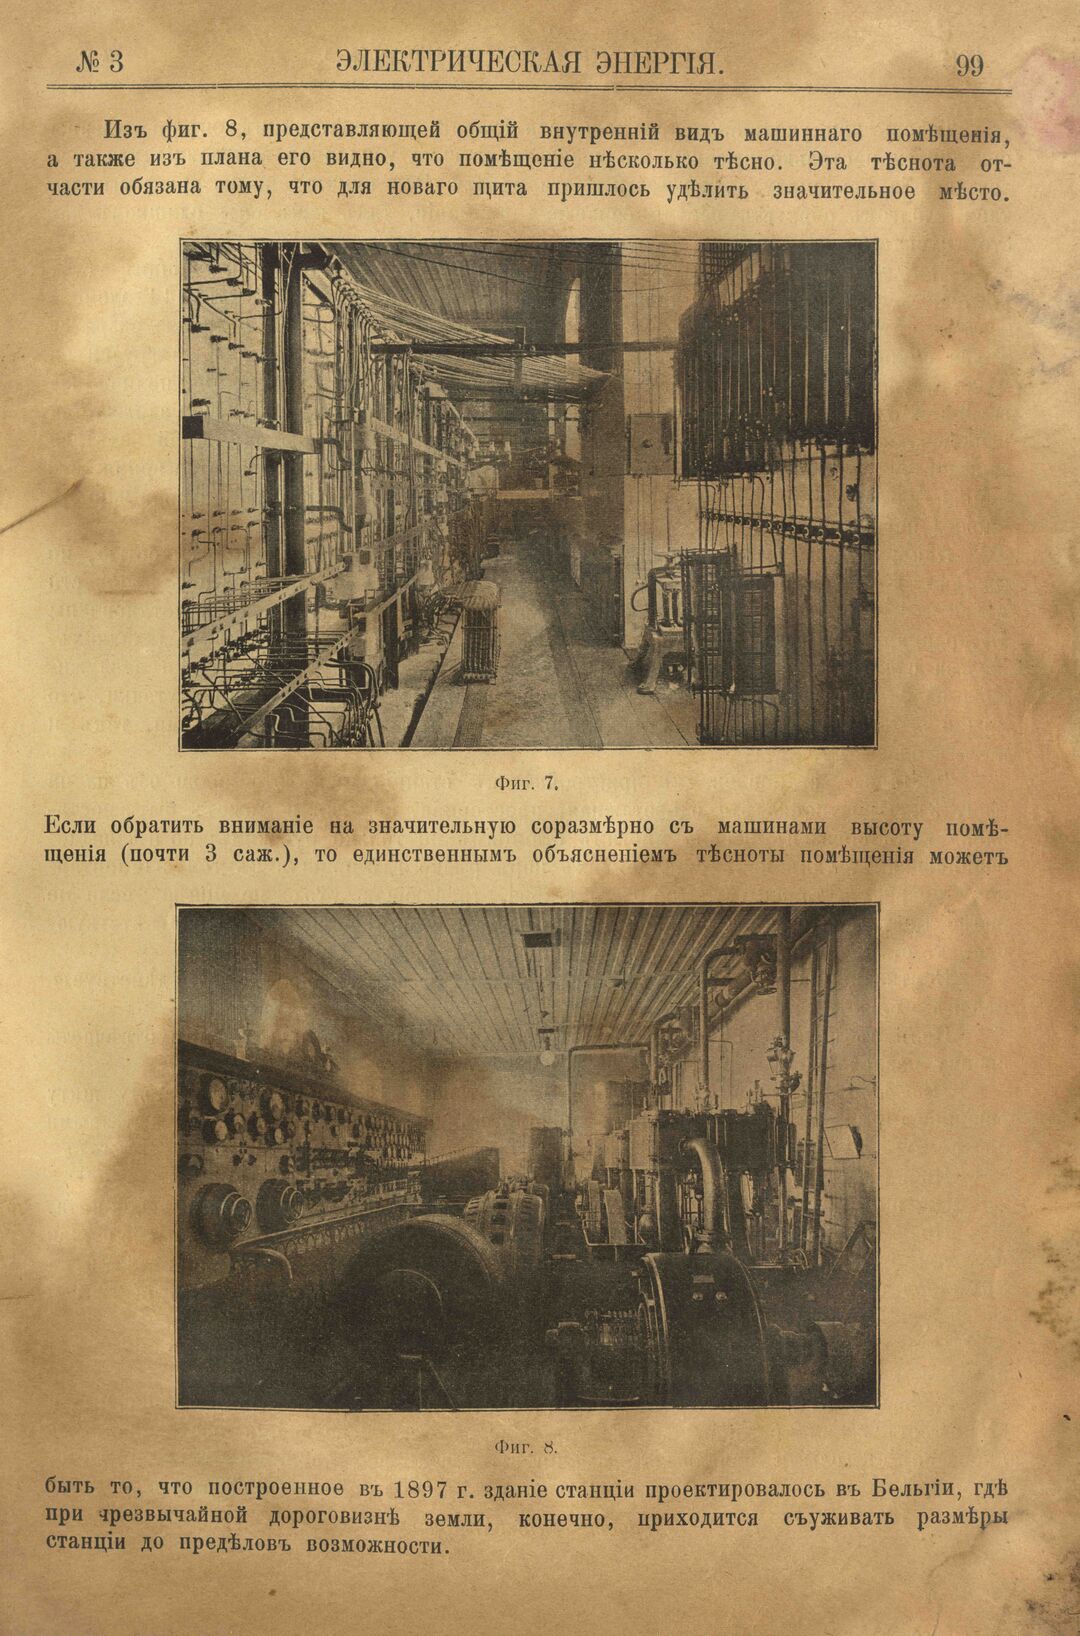 Рис. 1. Журнал Электрическая Энергiя, 3 номер, март, 1904 года, страница 99